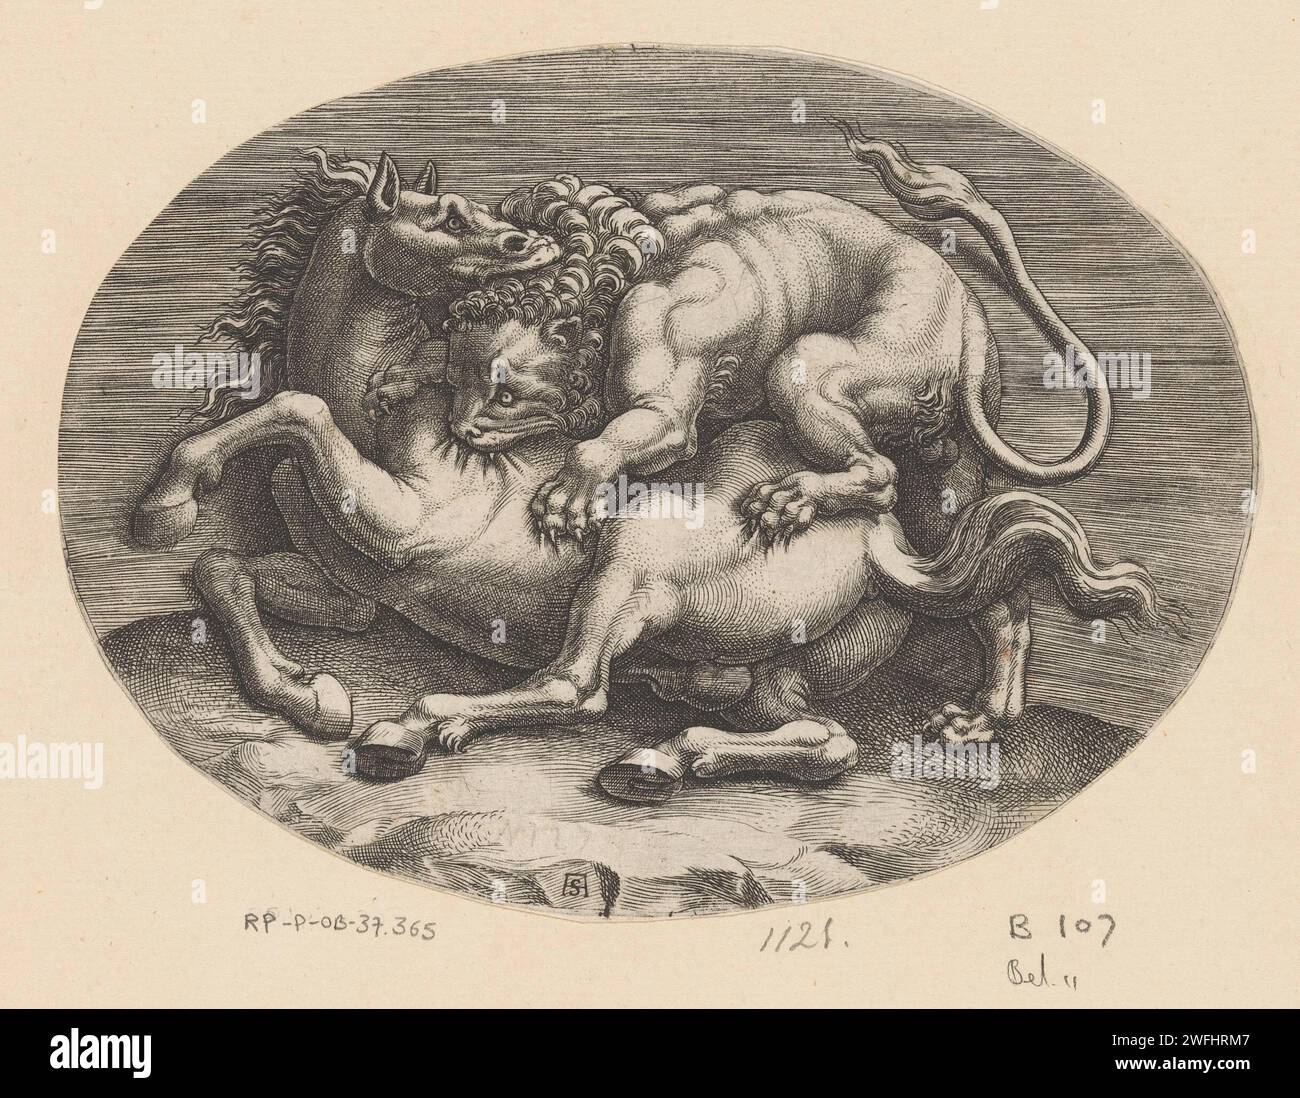 Cheval attaqué par un lion, Adamo Scultori, d'après Giulio Romano, d'après Anonymous, c. 1540 - c. 1585 imprimer Un lion et un cheval en combat. Le lion gravit le cheval lors d'une attaque. Il se mordit dans la peau du cheval, tandis que le cheval à son tour mordait la tête du lion. Imprimeur : Italiaaprès dessin par : Italiaaprès sculpture par : Rome gravure sur papier bêtes de proie, animaux prédateurs : lion. cheval. animaux (+ animaux de combat ; relations agressives) Banque D'Images